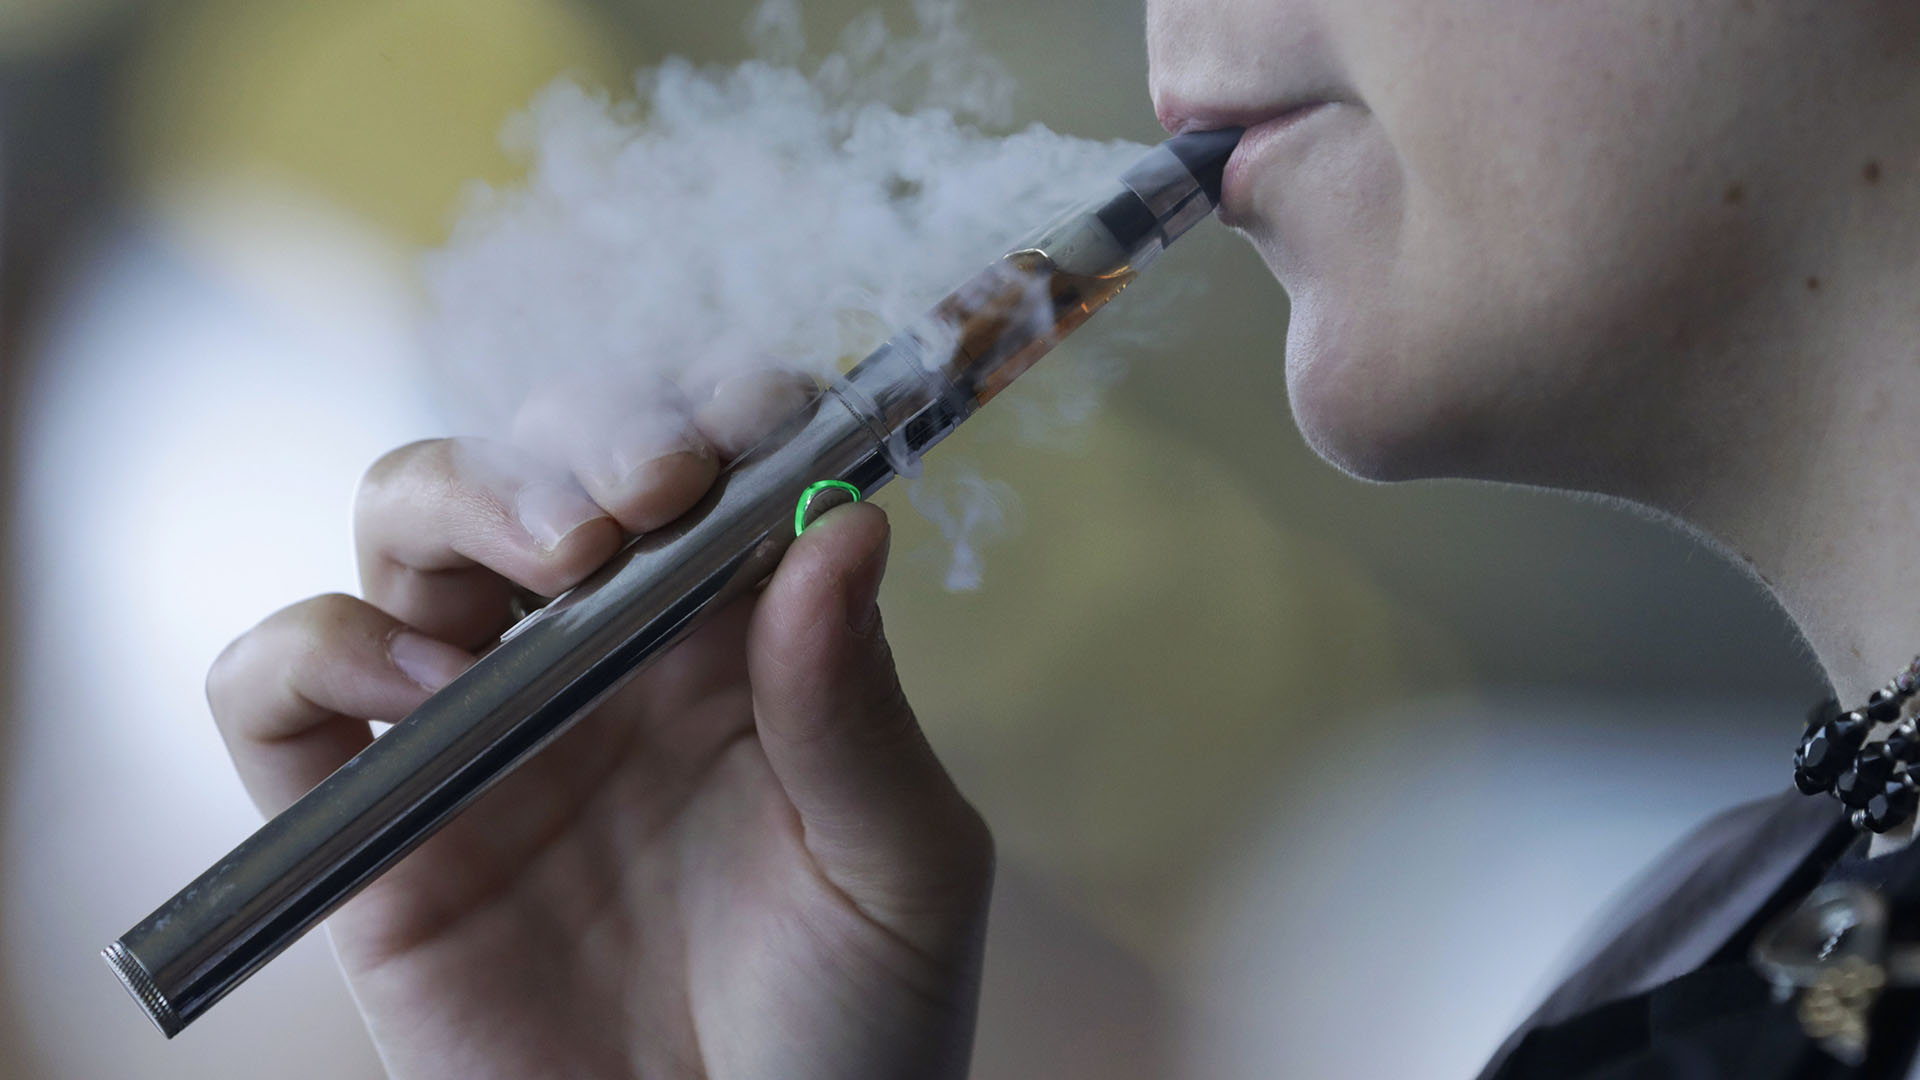 latest research on e cigarettes